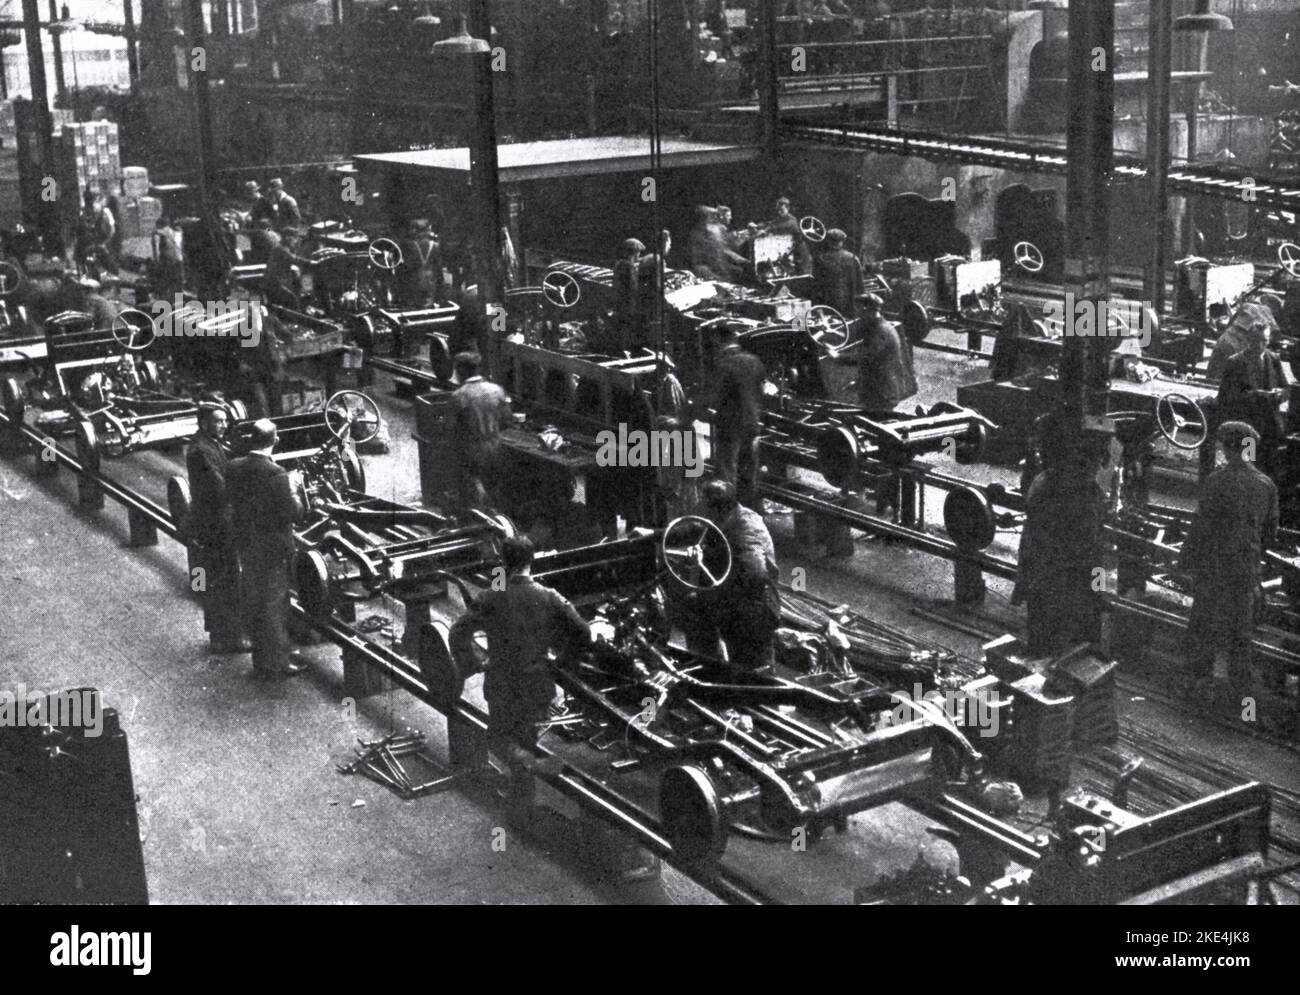 Die Hauptmontagelinie in der Cowley-Fabrik, c1935. William Morris (1877-1963) eröffnete 1913 eine Fabrik am ehemaligen Oxford Military College in Cowley, Oxford, Großbritannien. Morris Motors Limited war ein britisches Kraftfahrzeugunternehmen, das 1919 gegründet wurde, um die Vermögenswerte von WRM Motors Limited von William Morris zu übernehmen. Bis 1926 machte seine Produktion 42 % der britischen Automobilproduktion aus. Stockfoto